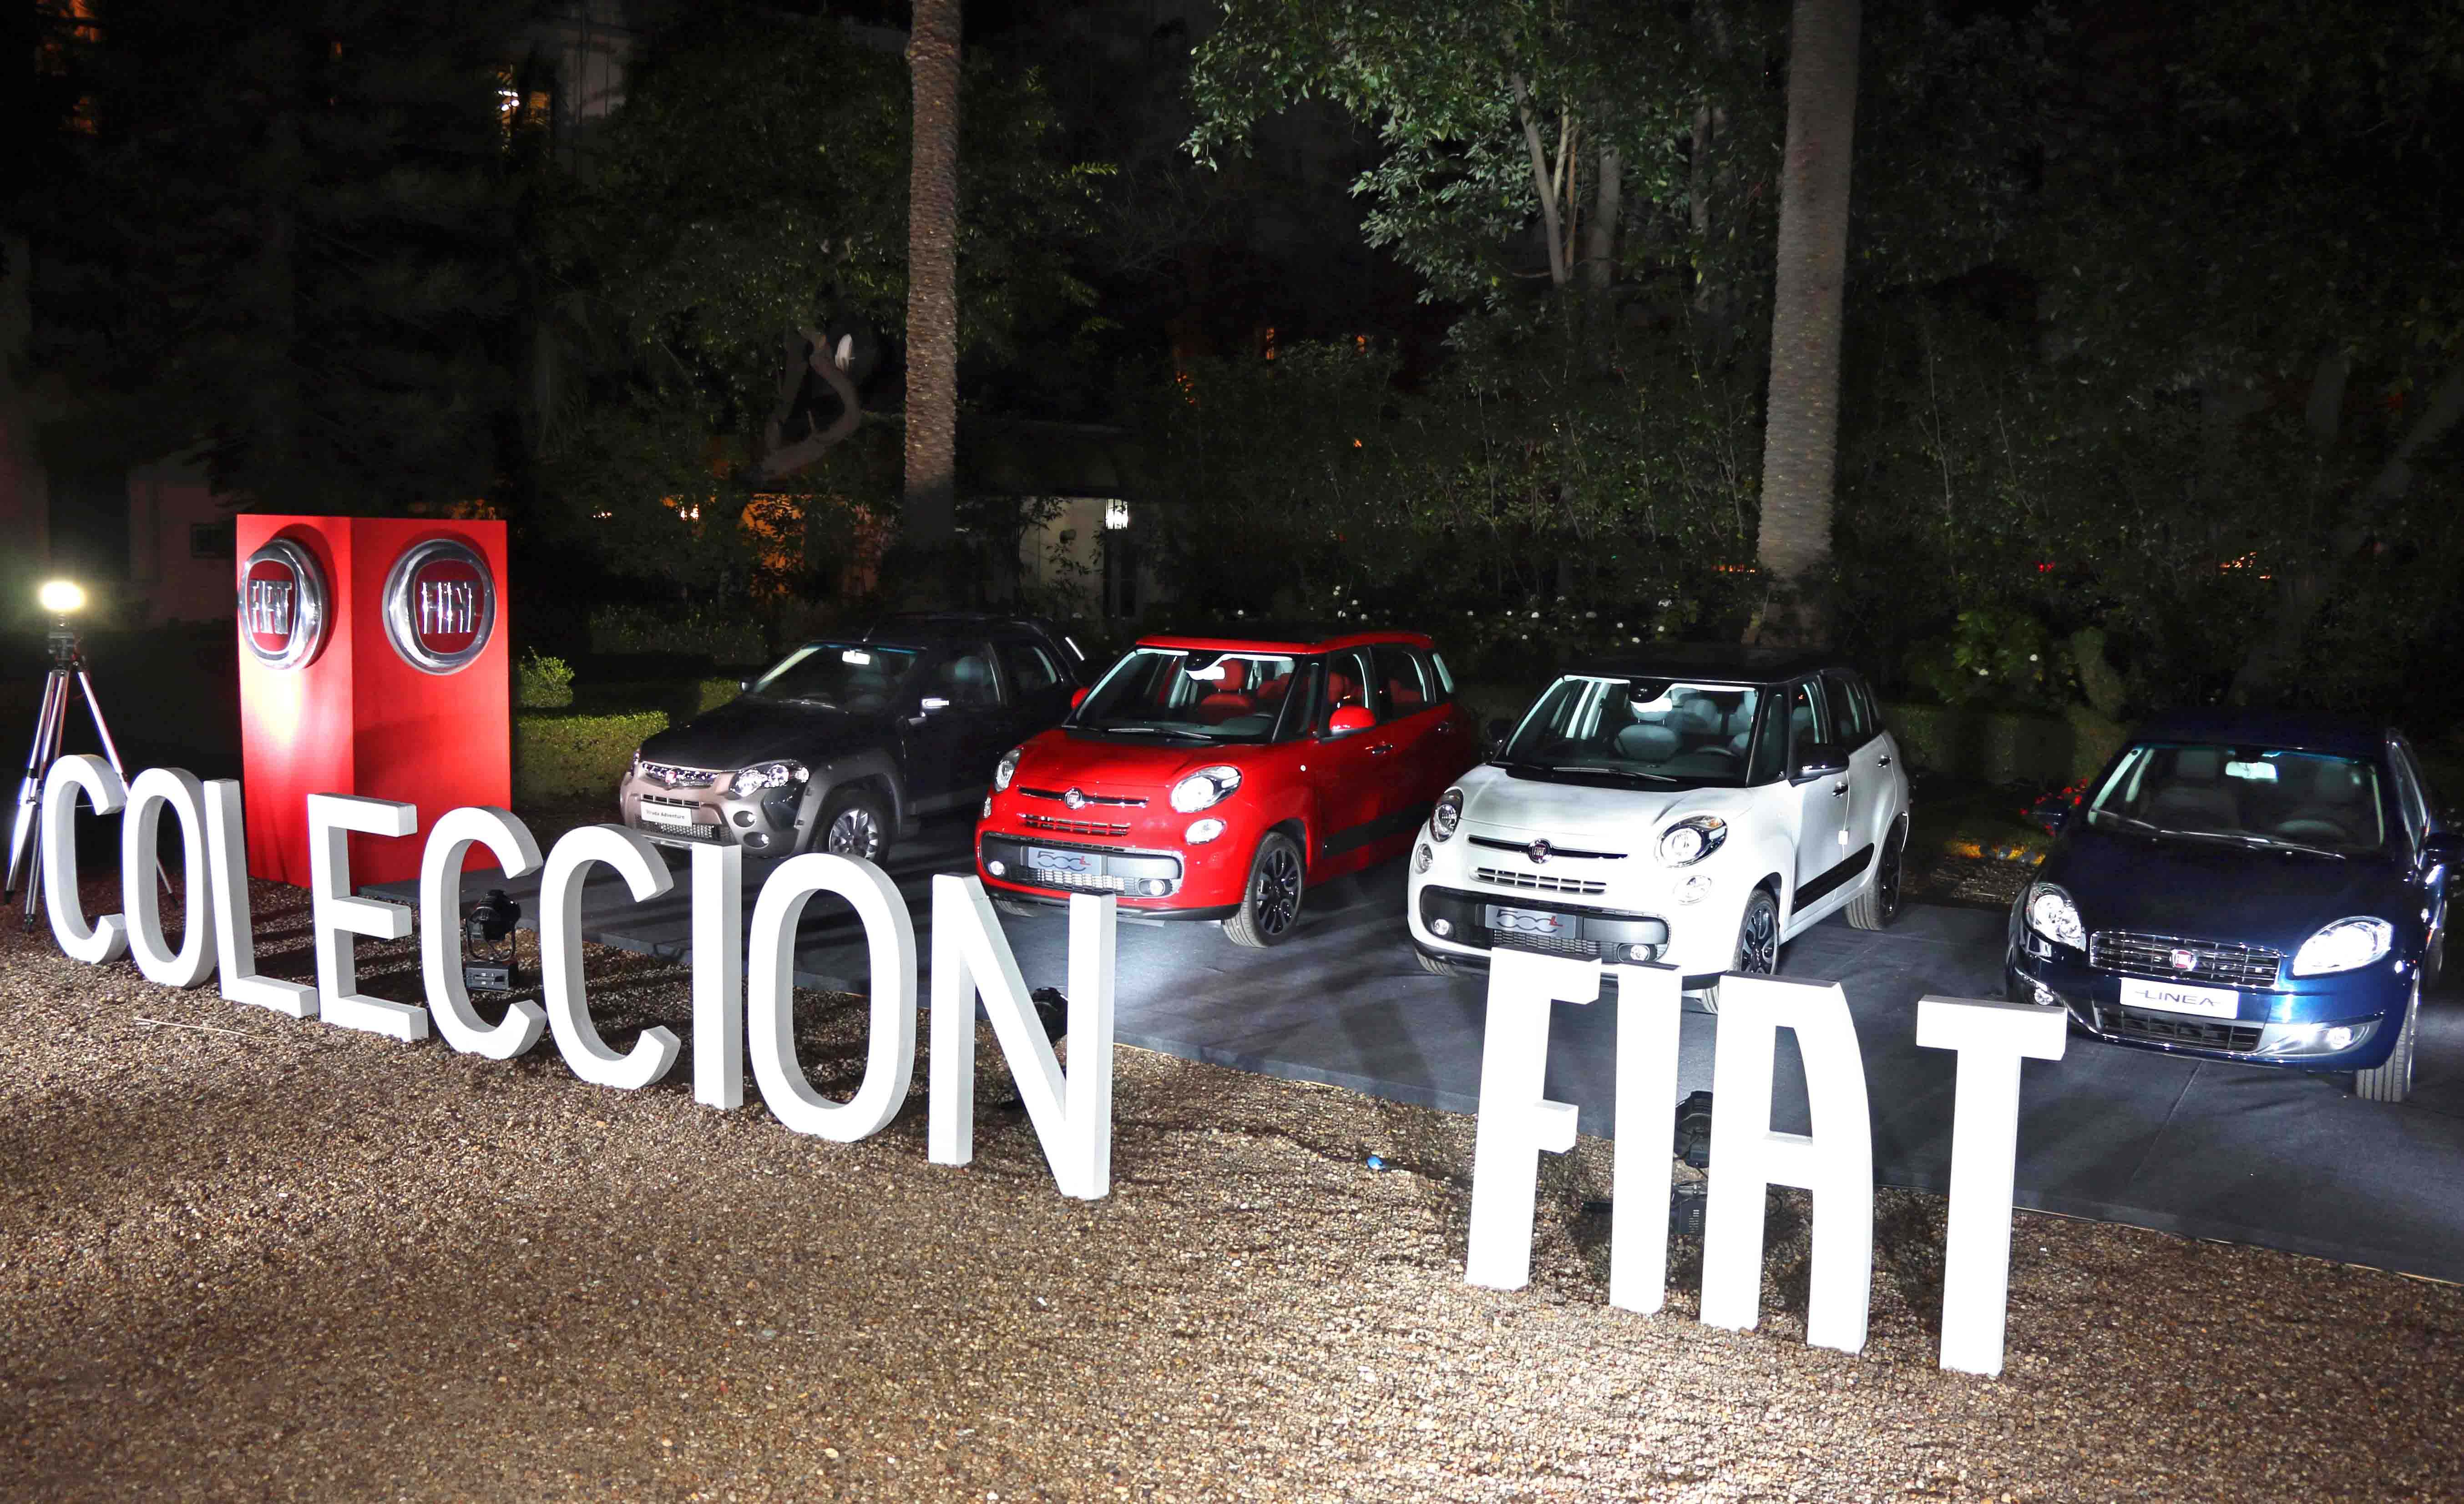 COLECCION FIAT 2014 1